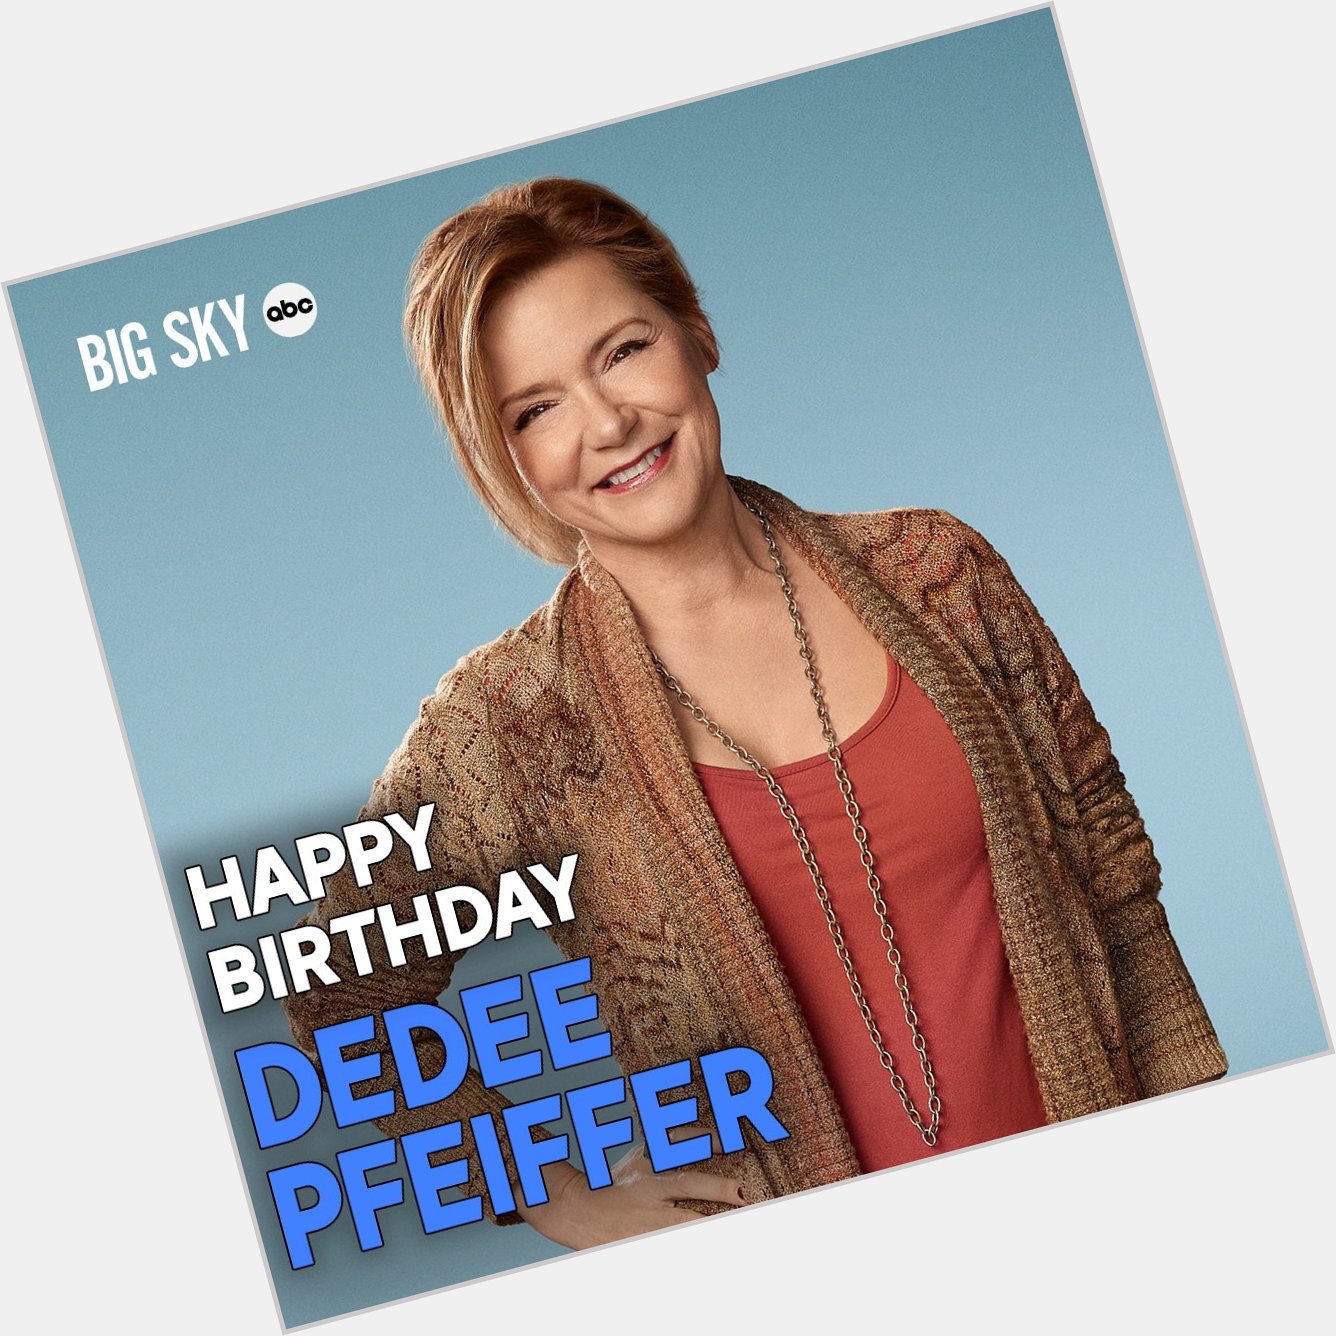 Please join us in wishing Dedee Pfeiffer a wonderful Happy Birthday!  